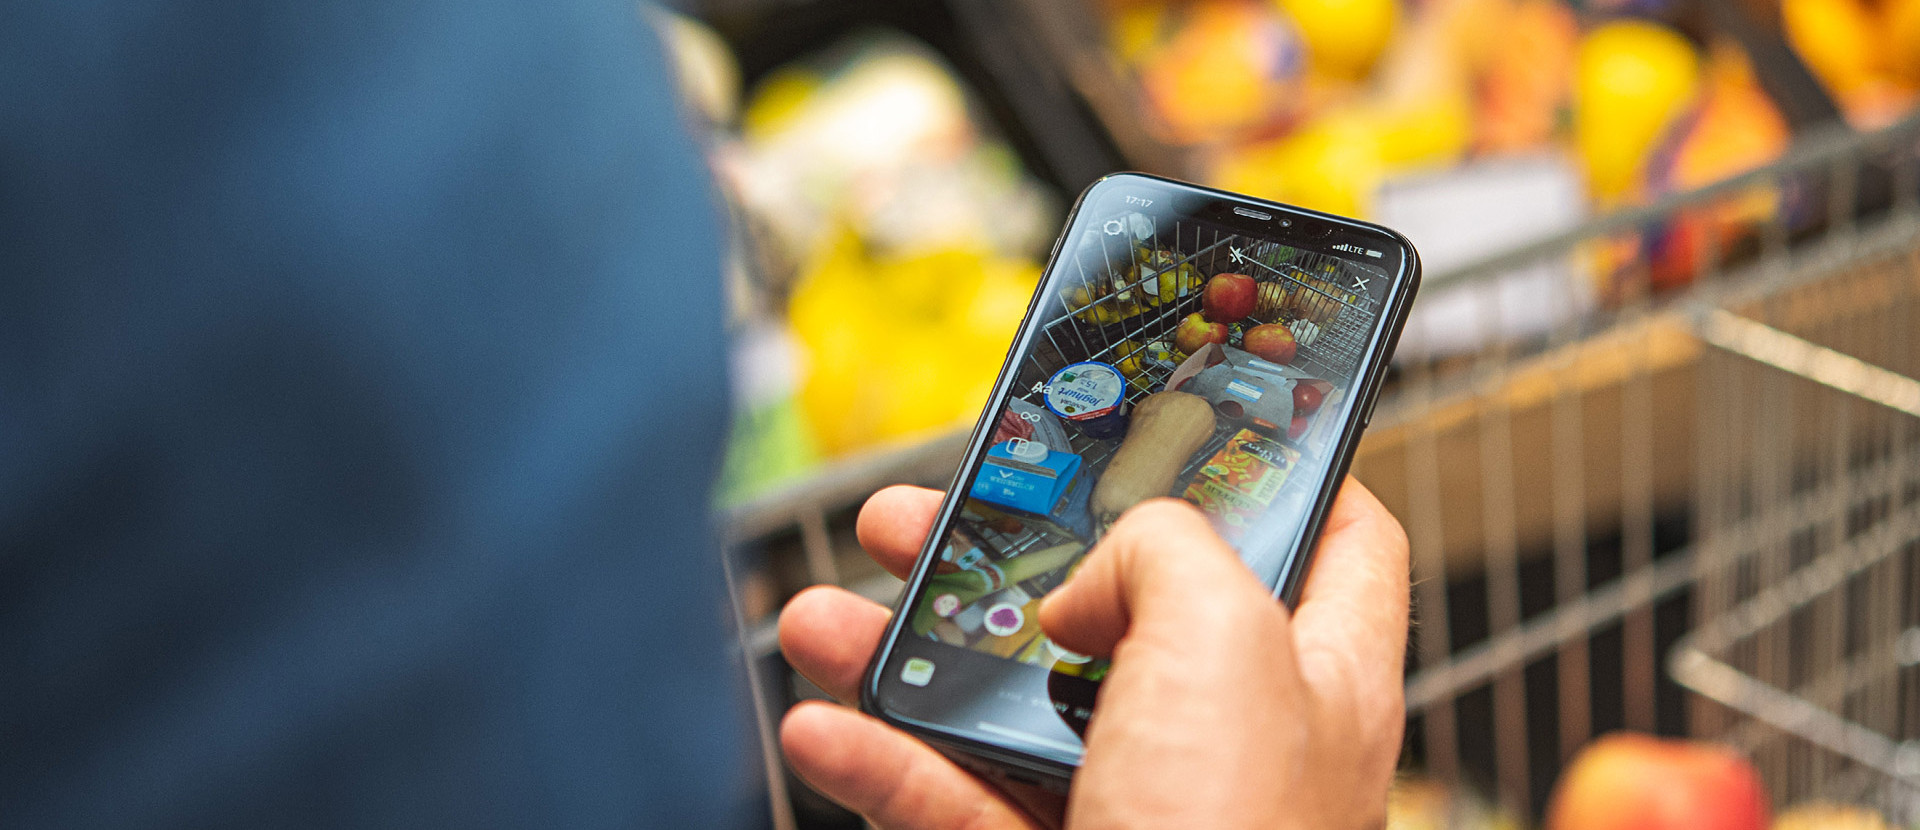 Ein Mann mit einem Smartphone in der Hand, der seine Einkäufe im Einkaufswagen fotografiert.